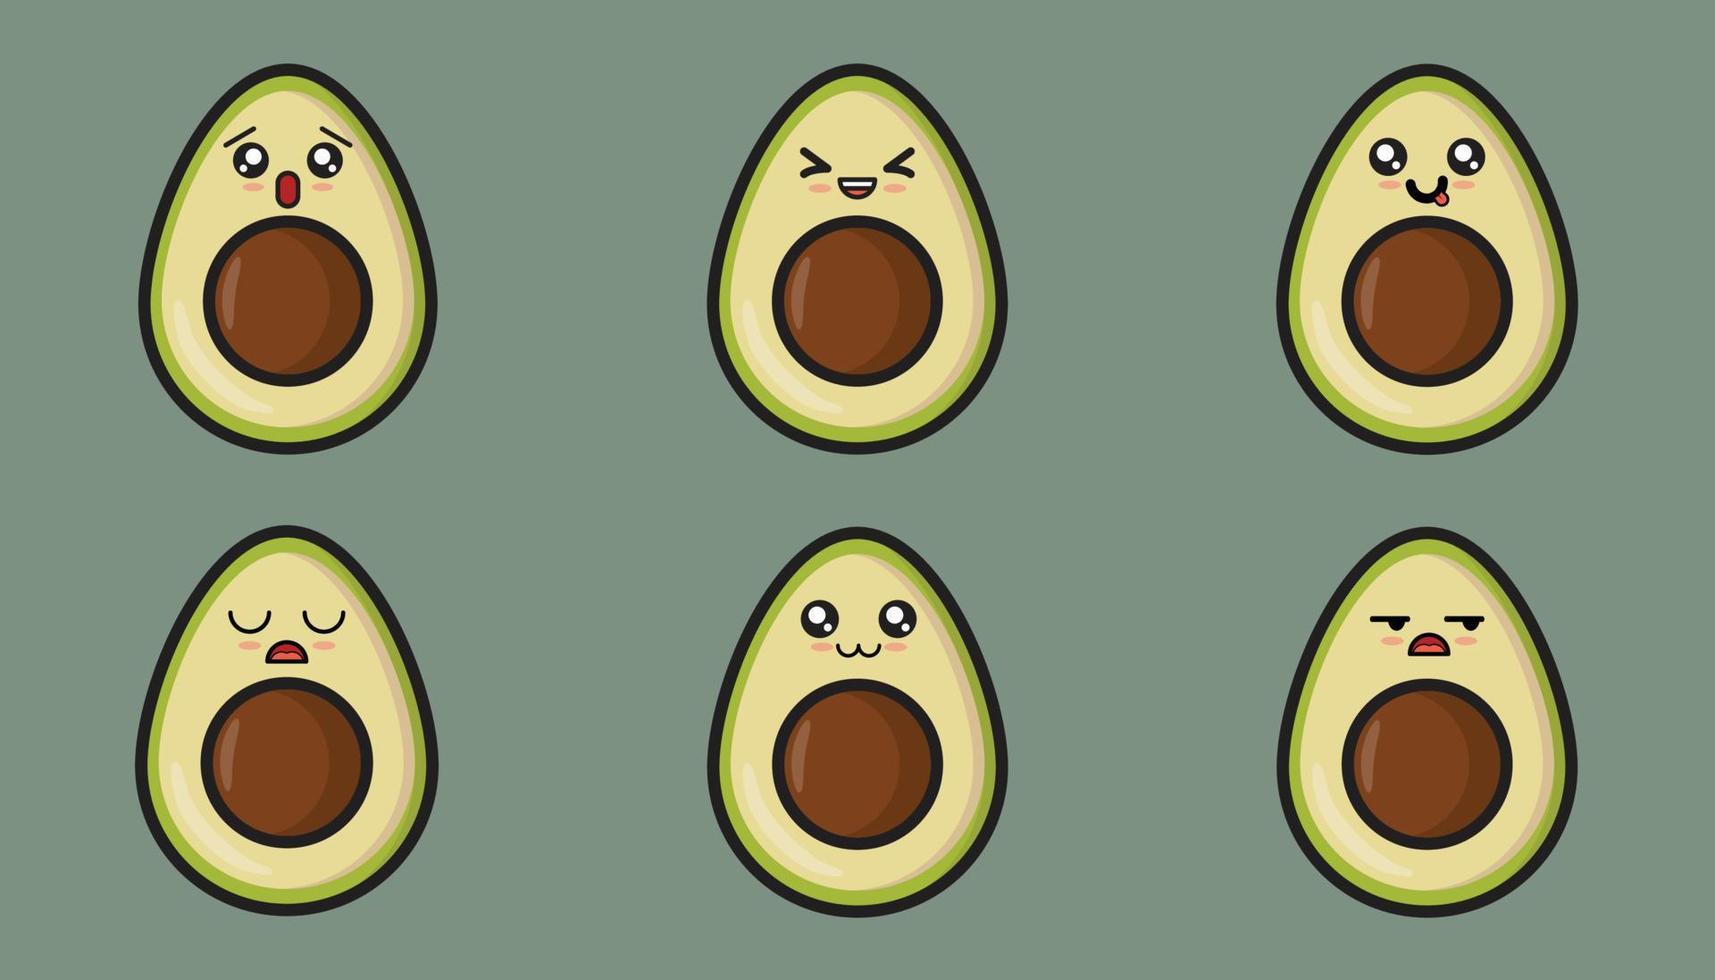 mignonne Avocat emoji illustration. avec une variété de suprêmement adorable expressions pouvez faire il une parfait une addition à tout social médias bavarder ou poste. vecteur